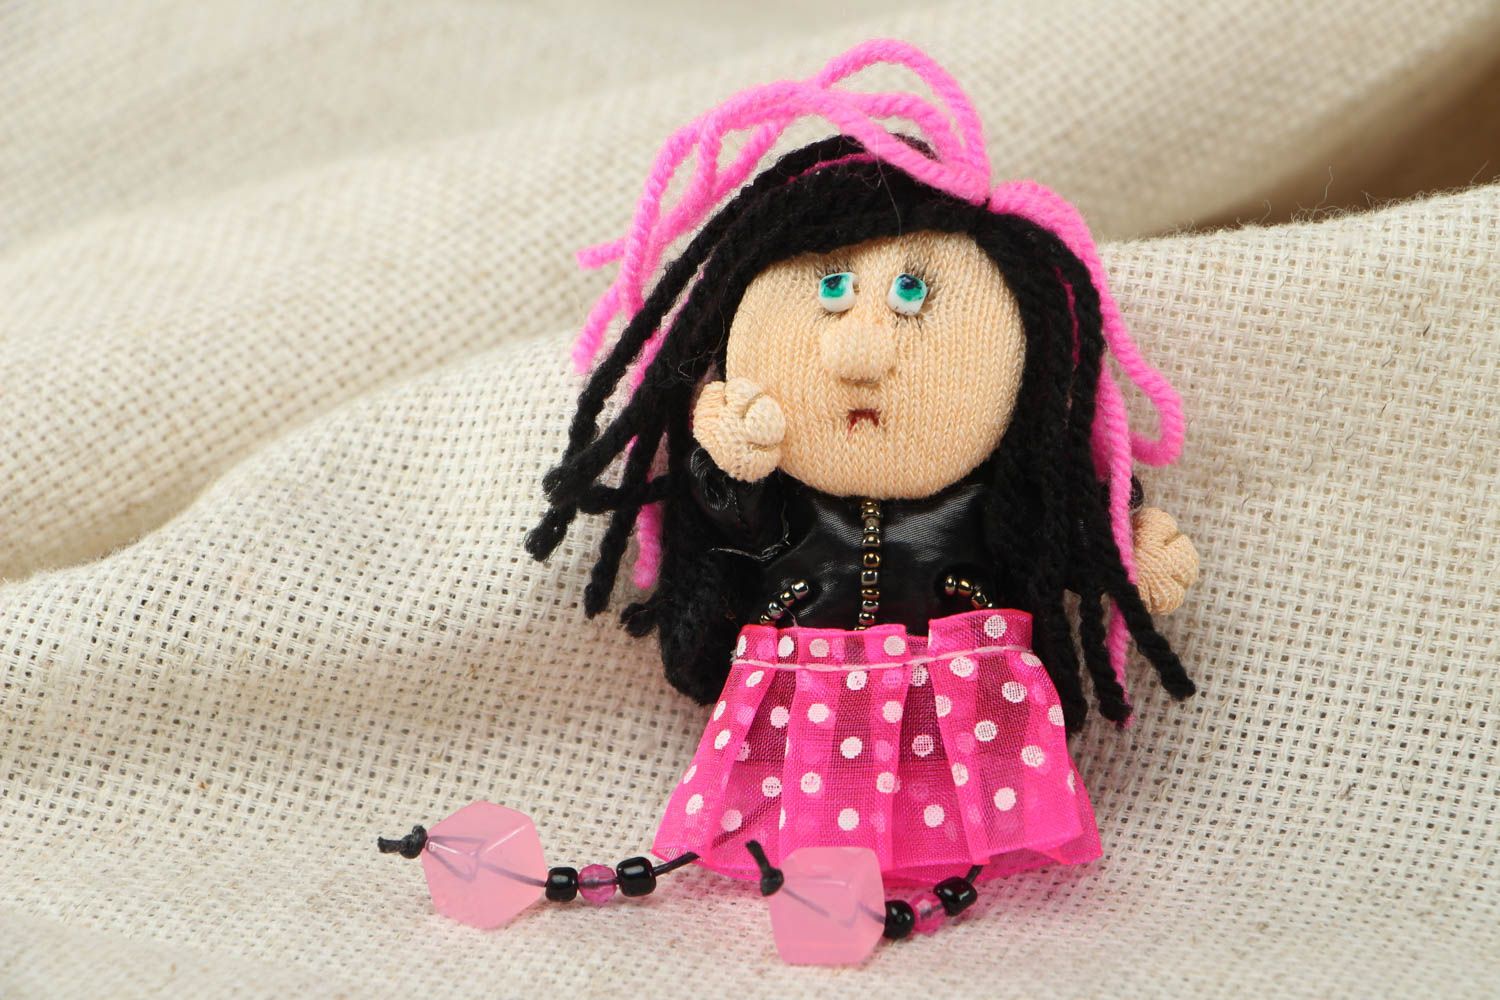 Текстильная брошь для девочки в виде куклы эмо фото 1